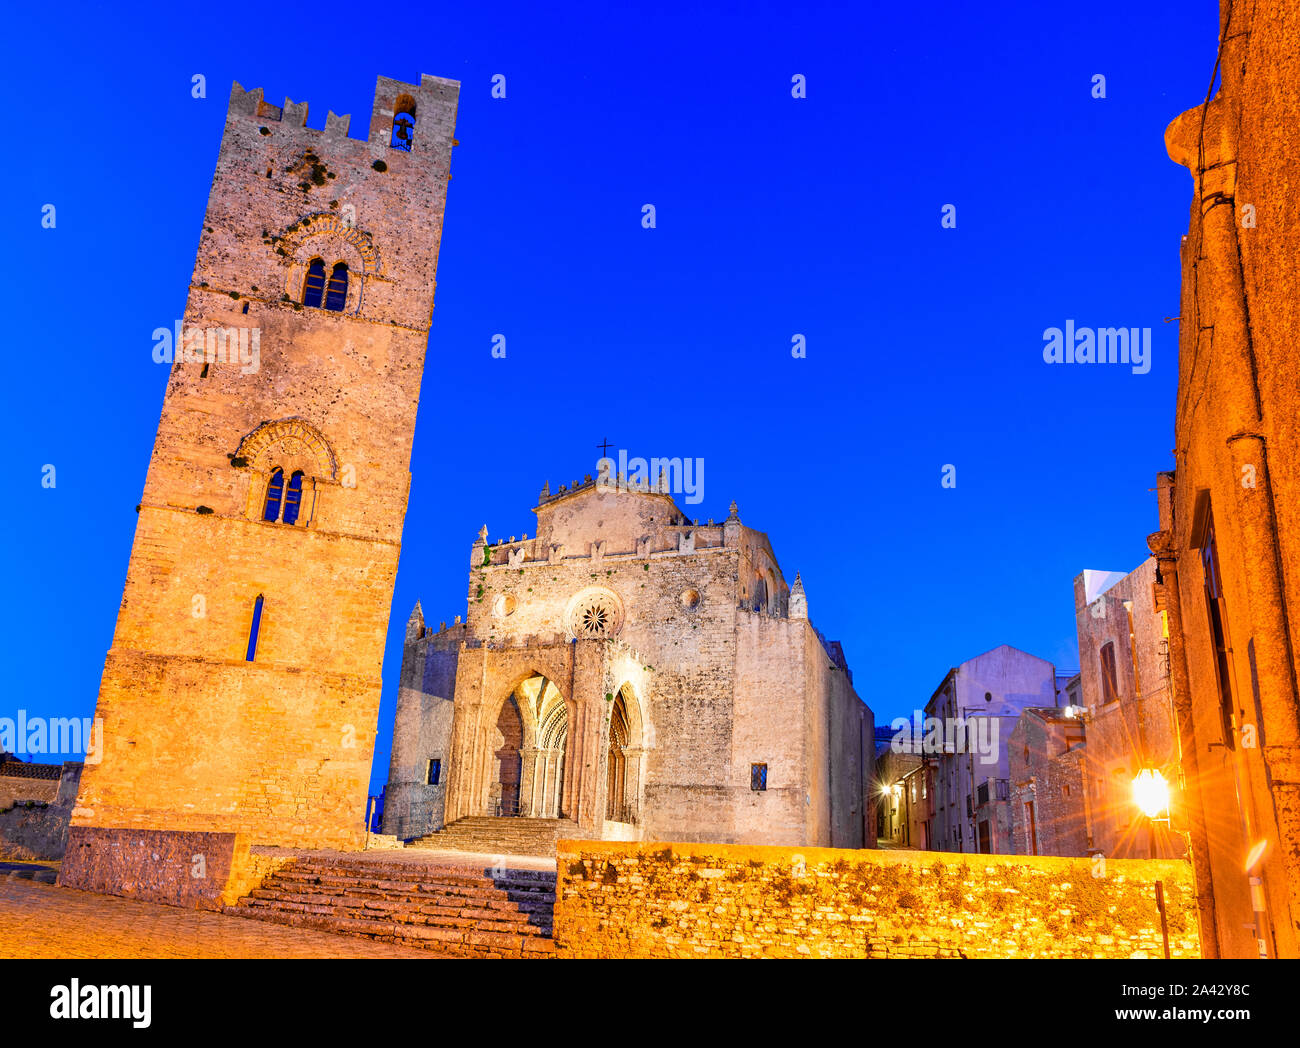 Erice, Sicile, Italie : Duomo dell'Assunta ou Chiesa Madre église principale de la ville médiévale de Erice, Europe Banque D'Images